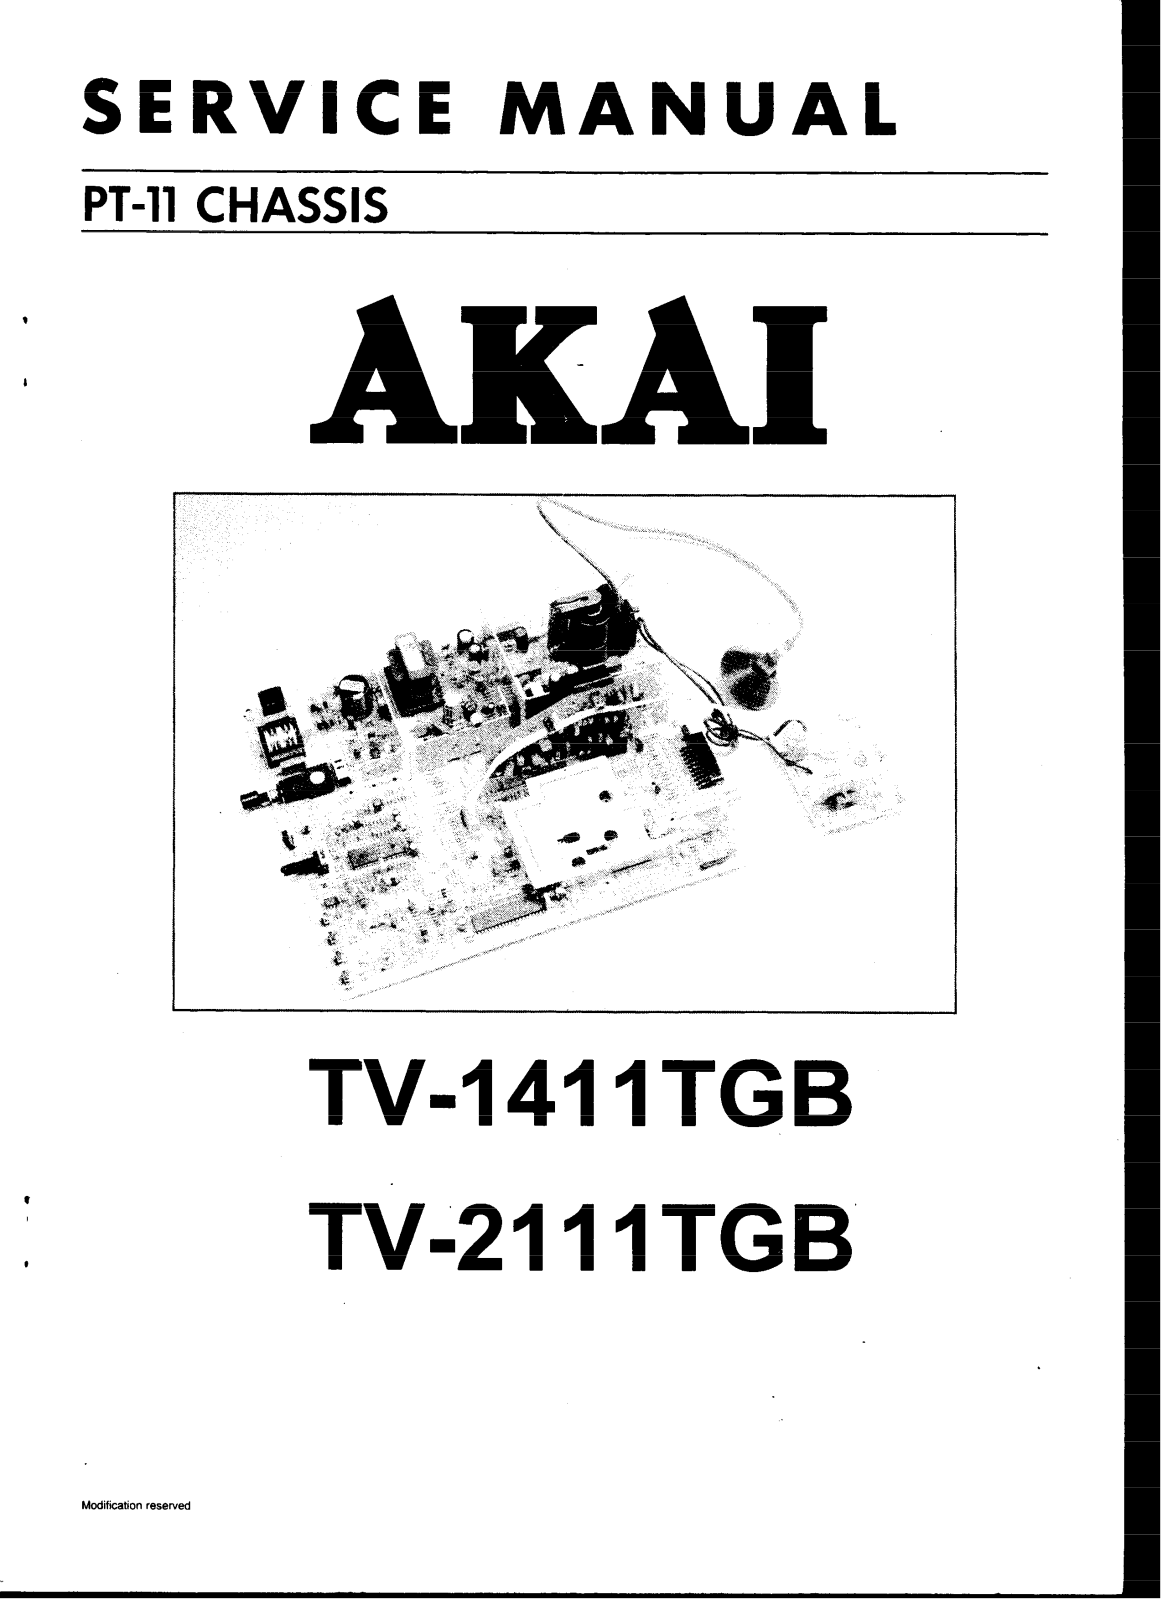 Akai PT-11, TV-2111TGB, TV-1411TGB Service Manual